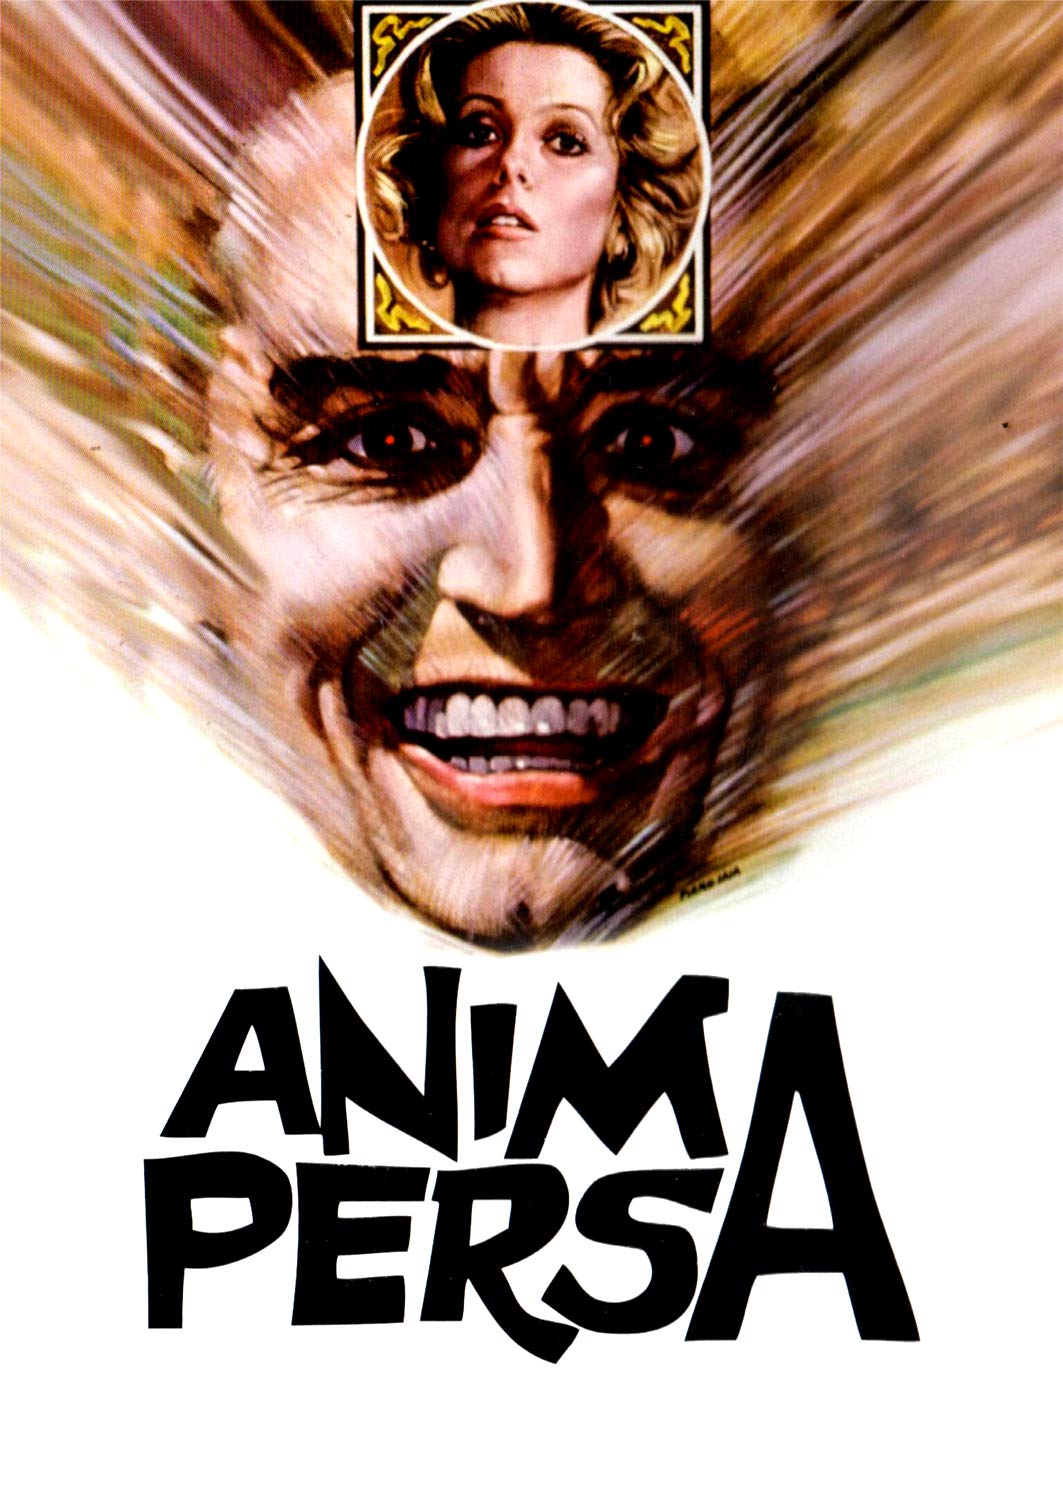 Anima persa [HD] (1977)